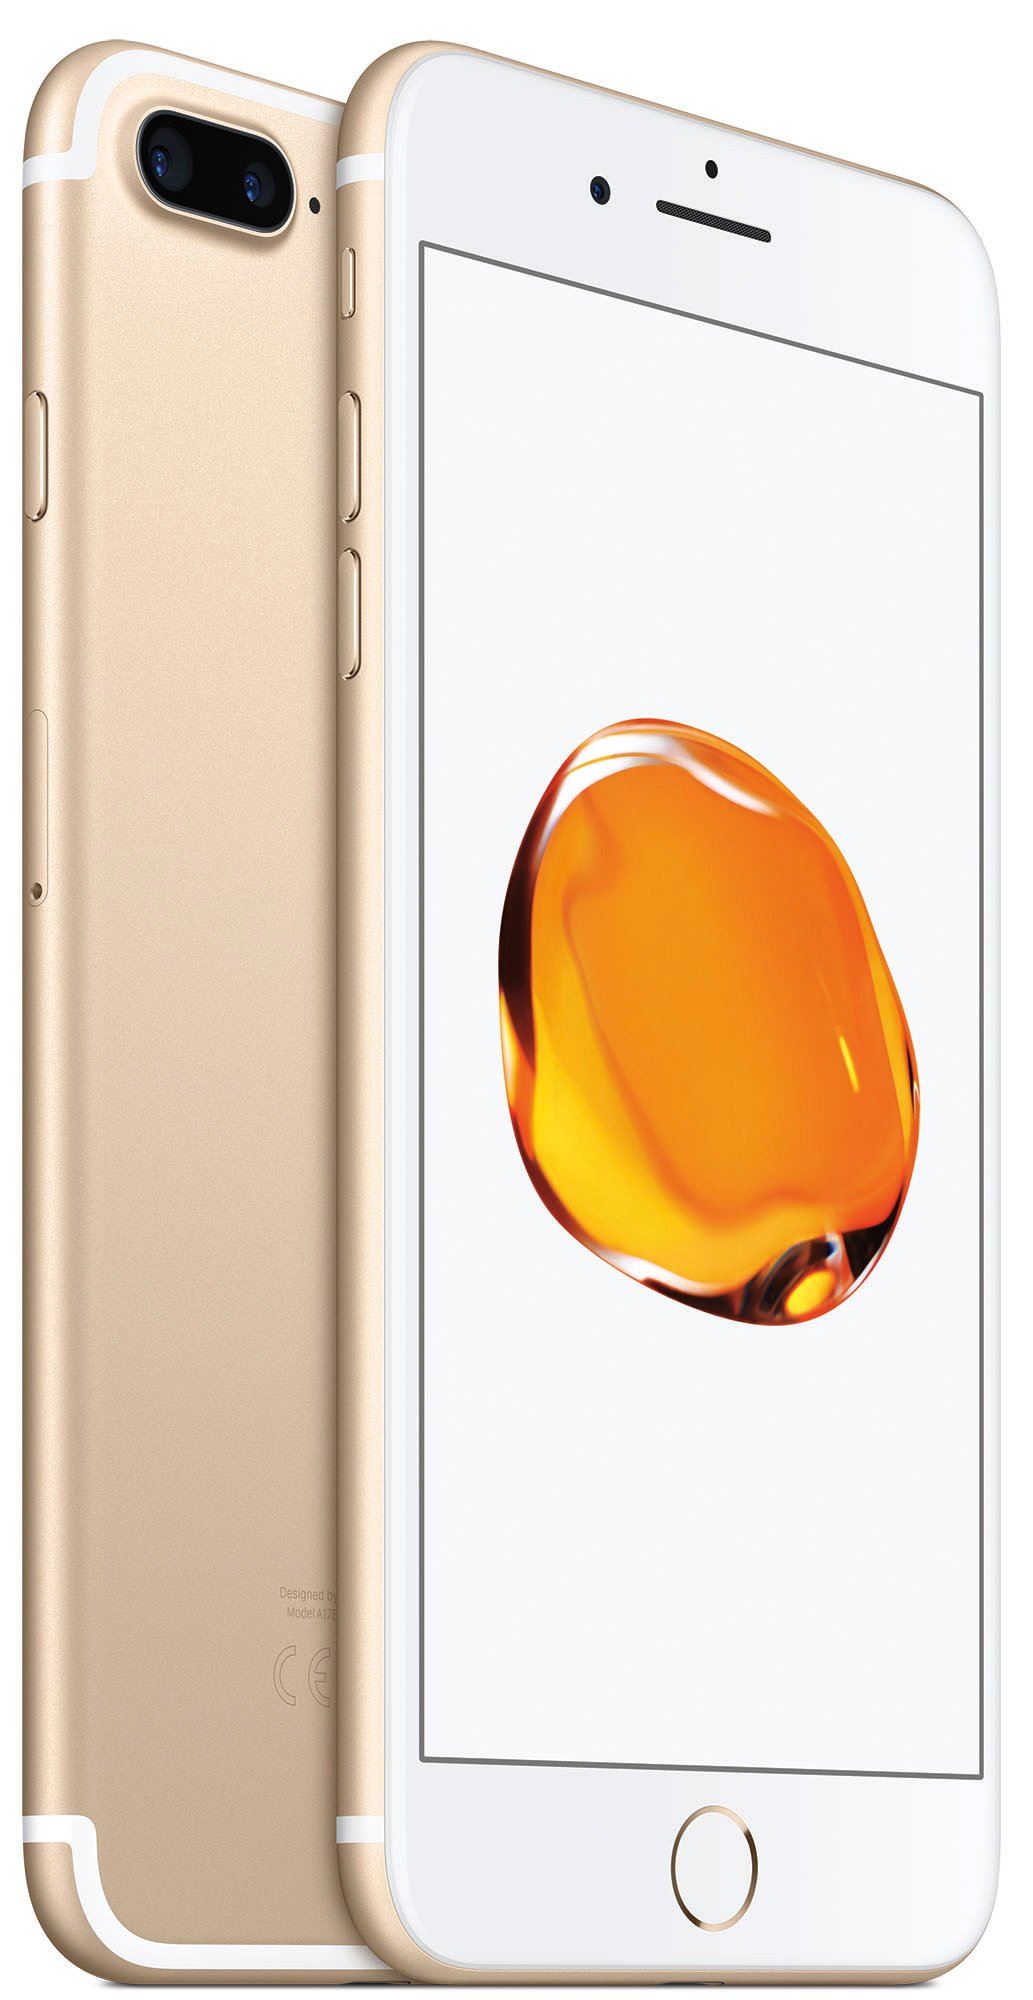 Apple iPhone 7 Plus 128GB gold